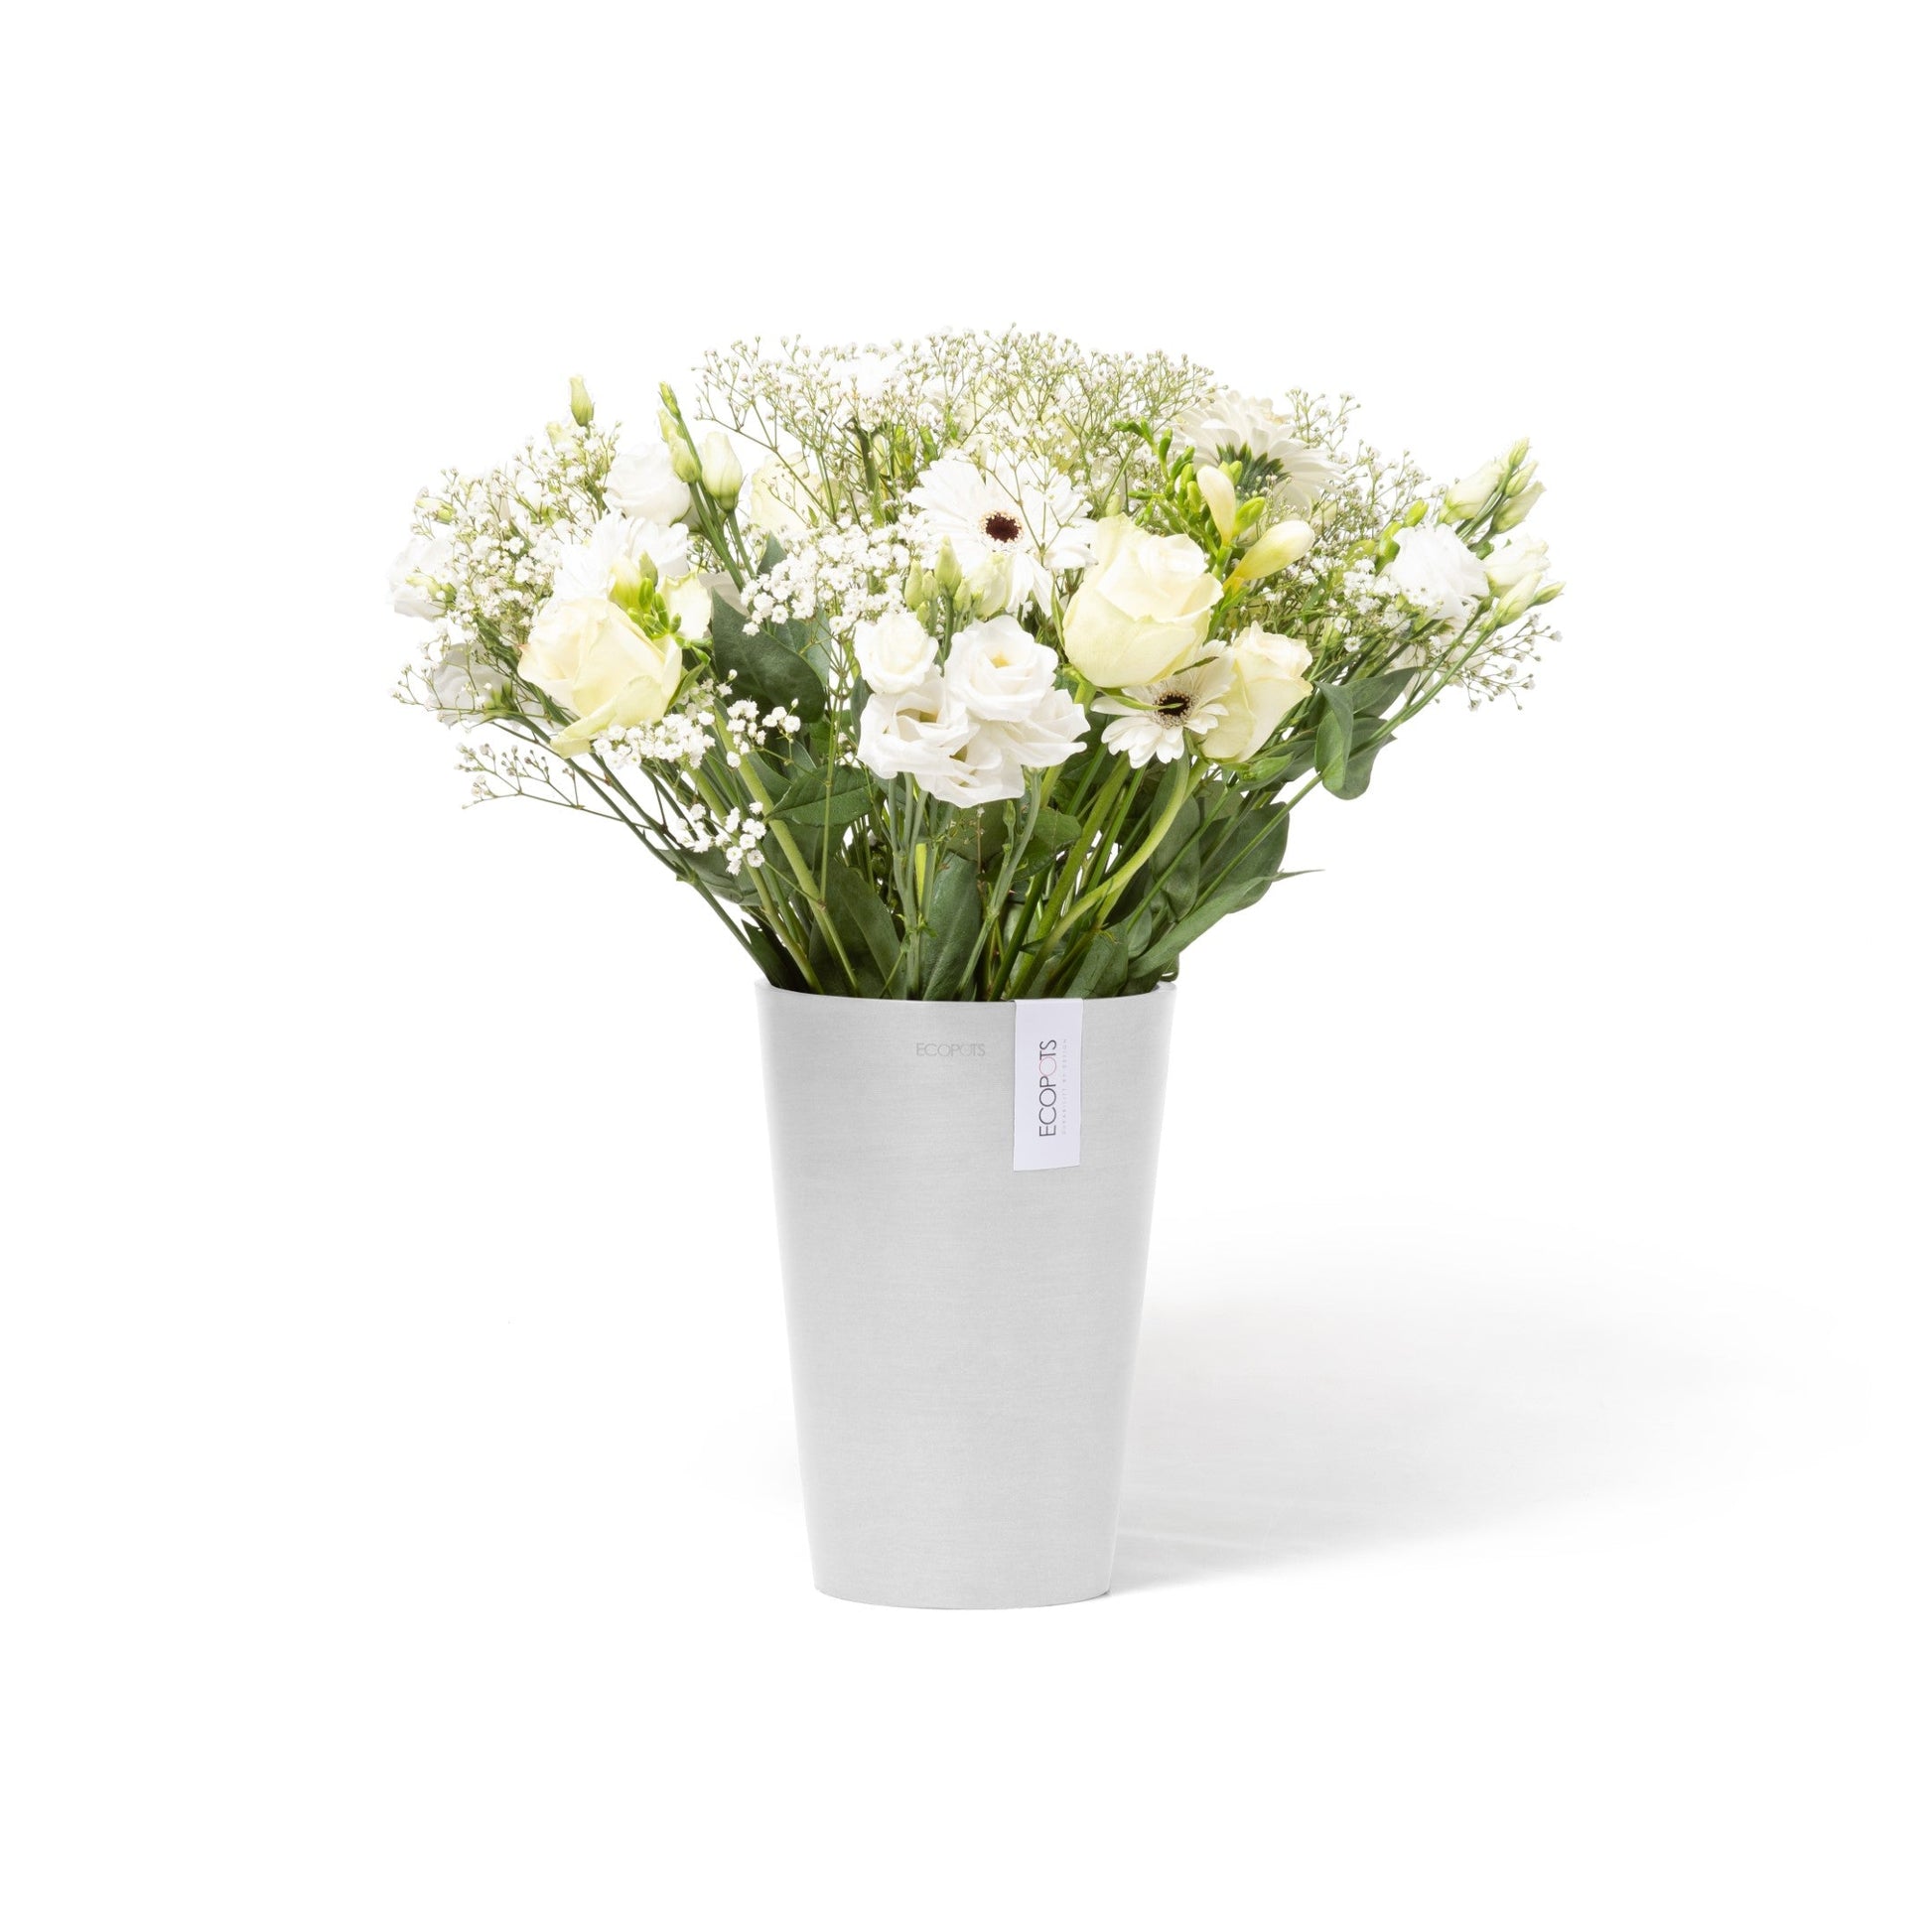 Kukkaruukku - Ecopots - Pisa 21cm puhdas valkoinen - Ecopotskauppa - Uuden aikakauden kukkaruukku